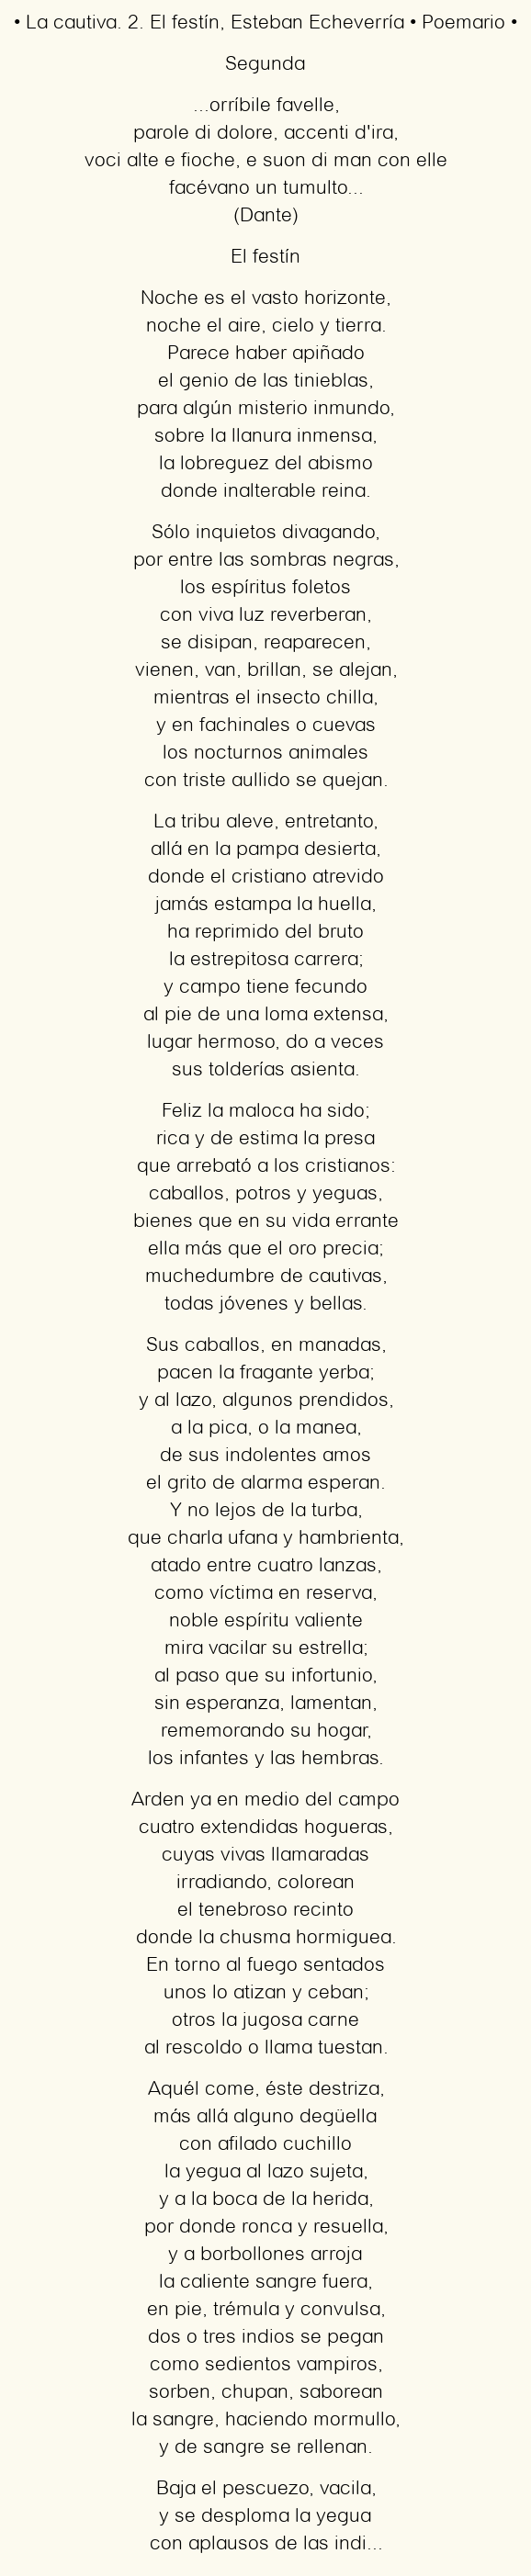 Imagen con el poema La cautiva. 2. El festín, por Esteban Echeverría